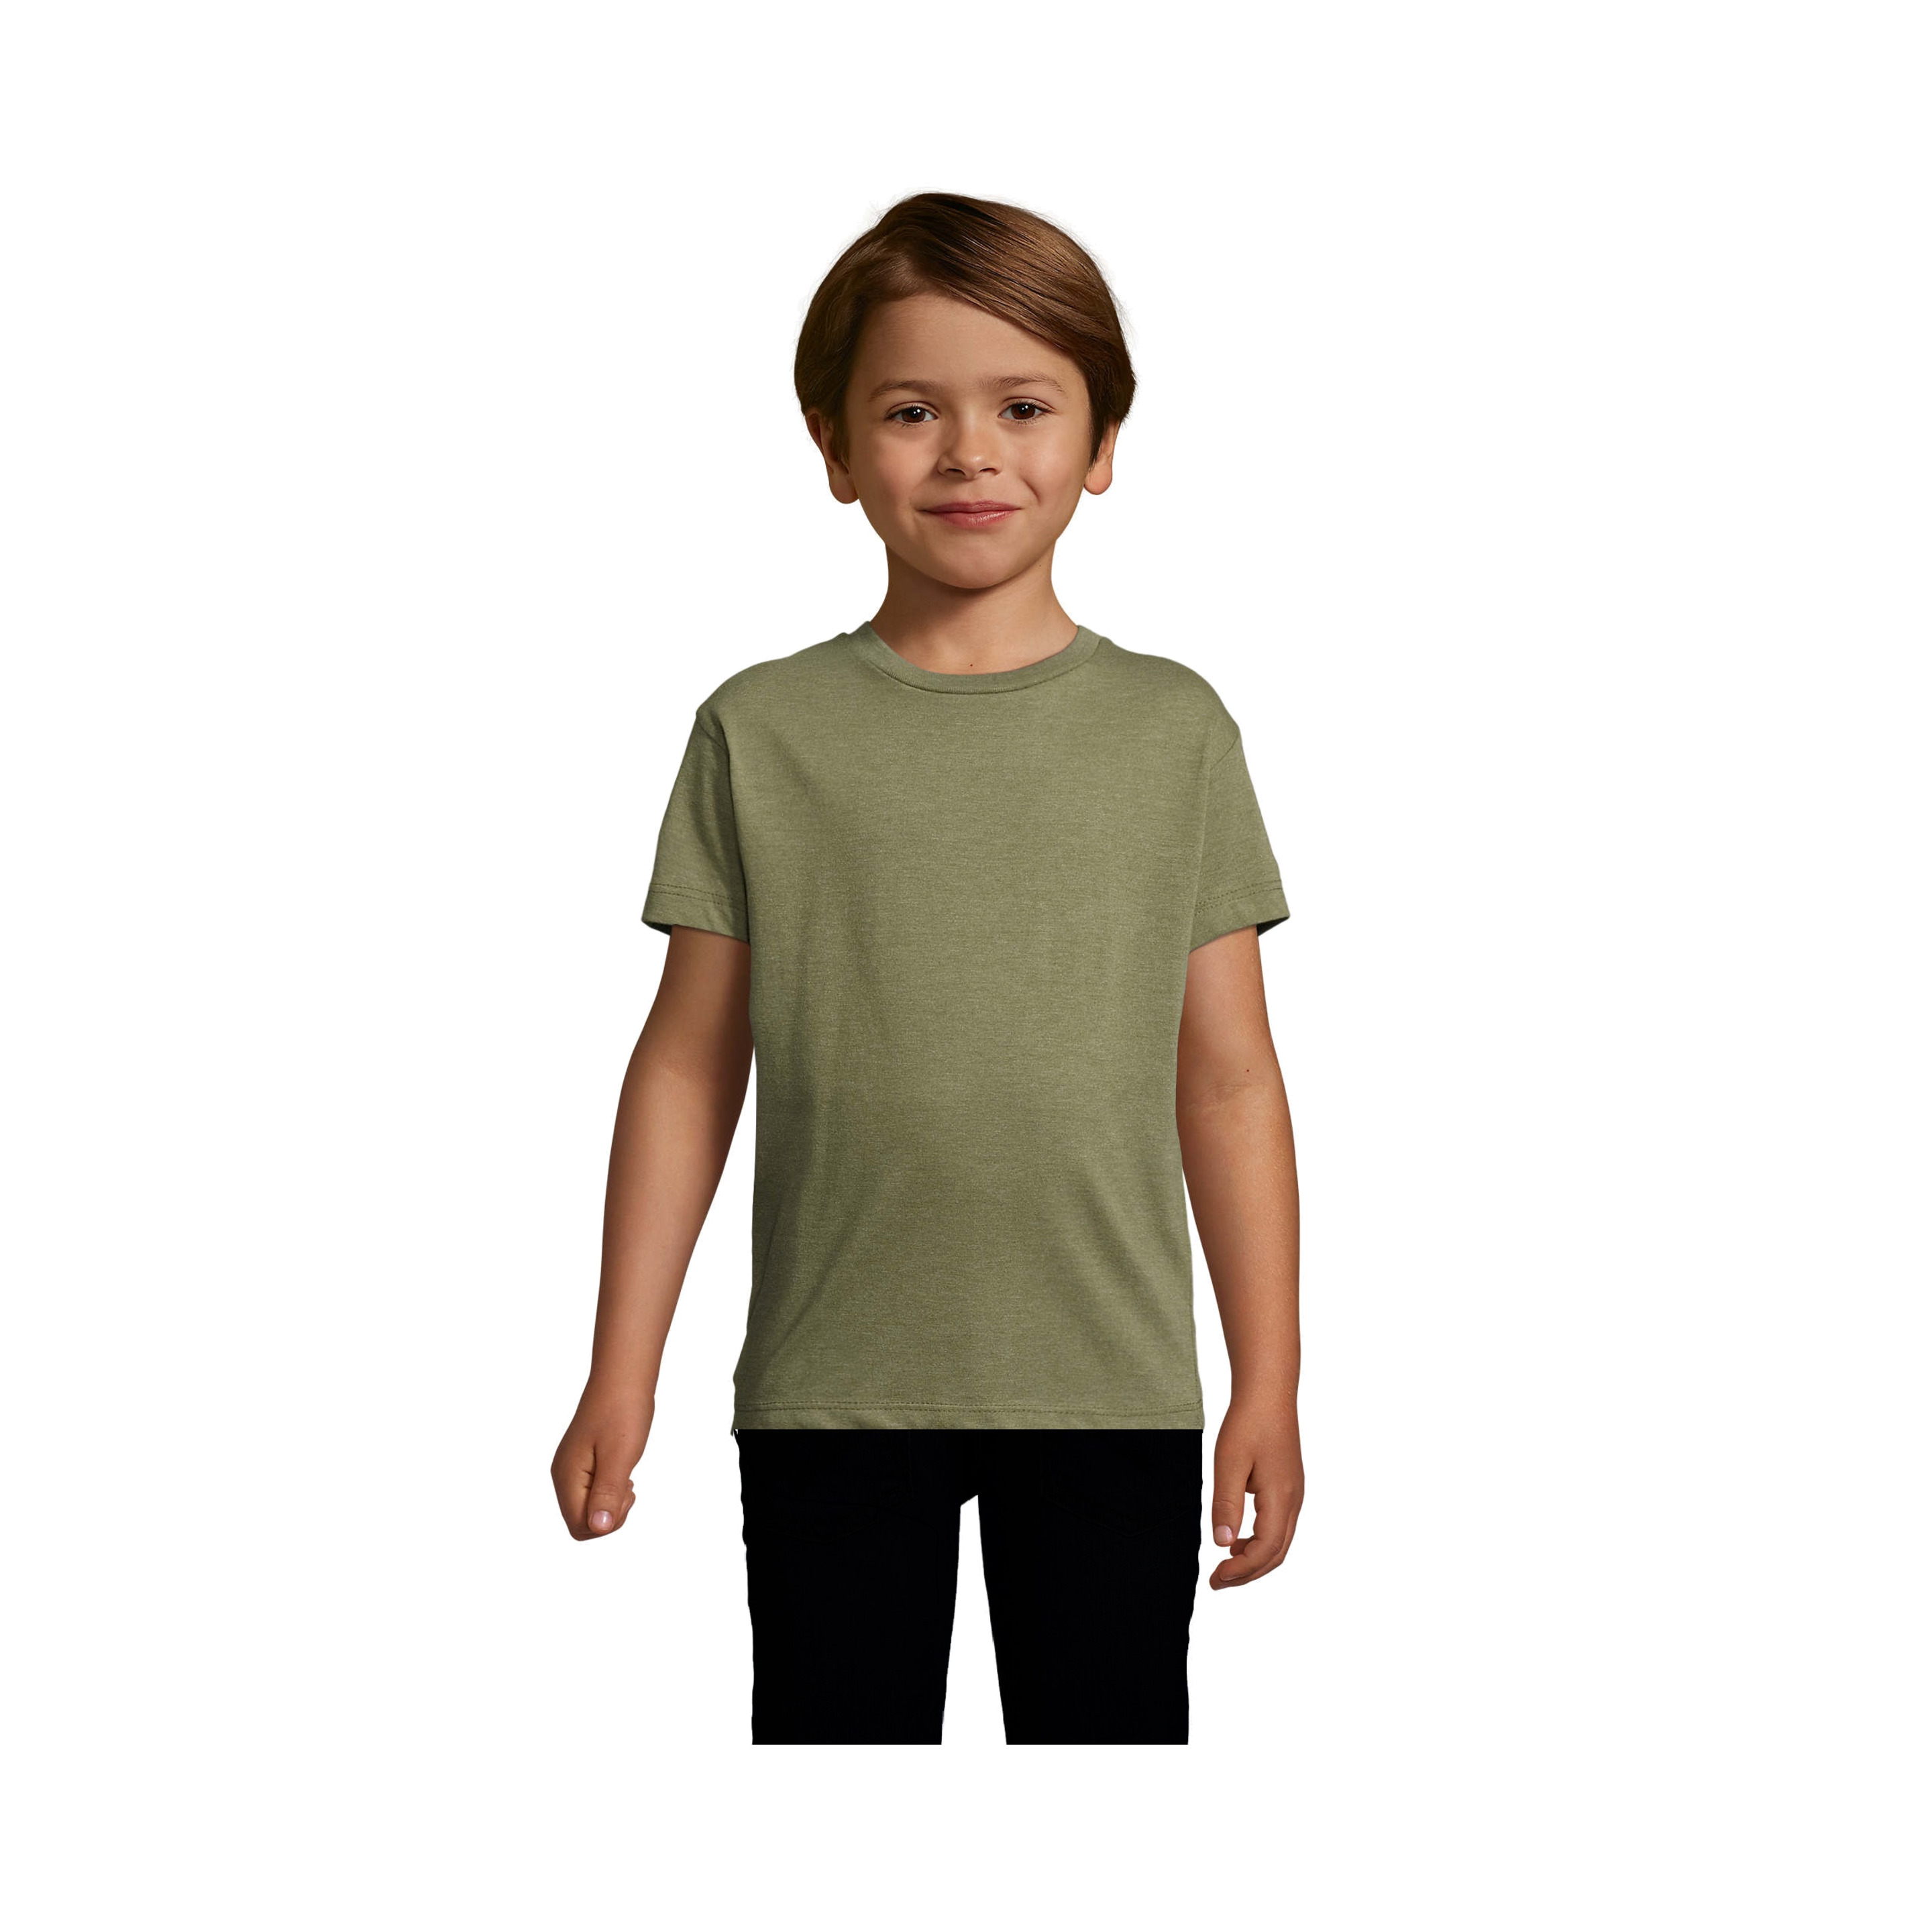 Lote 2 Camiseta Regent Fit Kids Entallada Cuello Redondo Regent